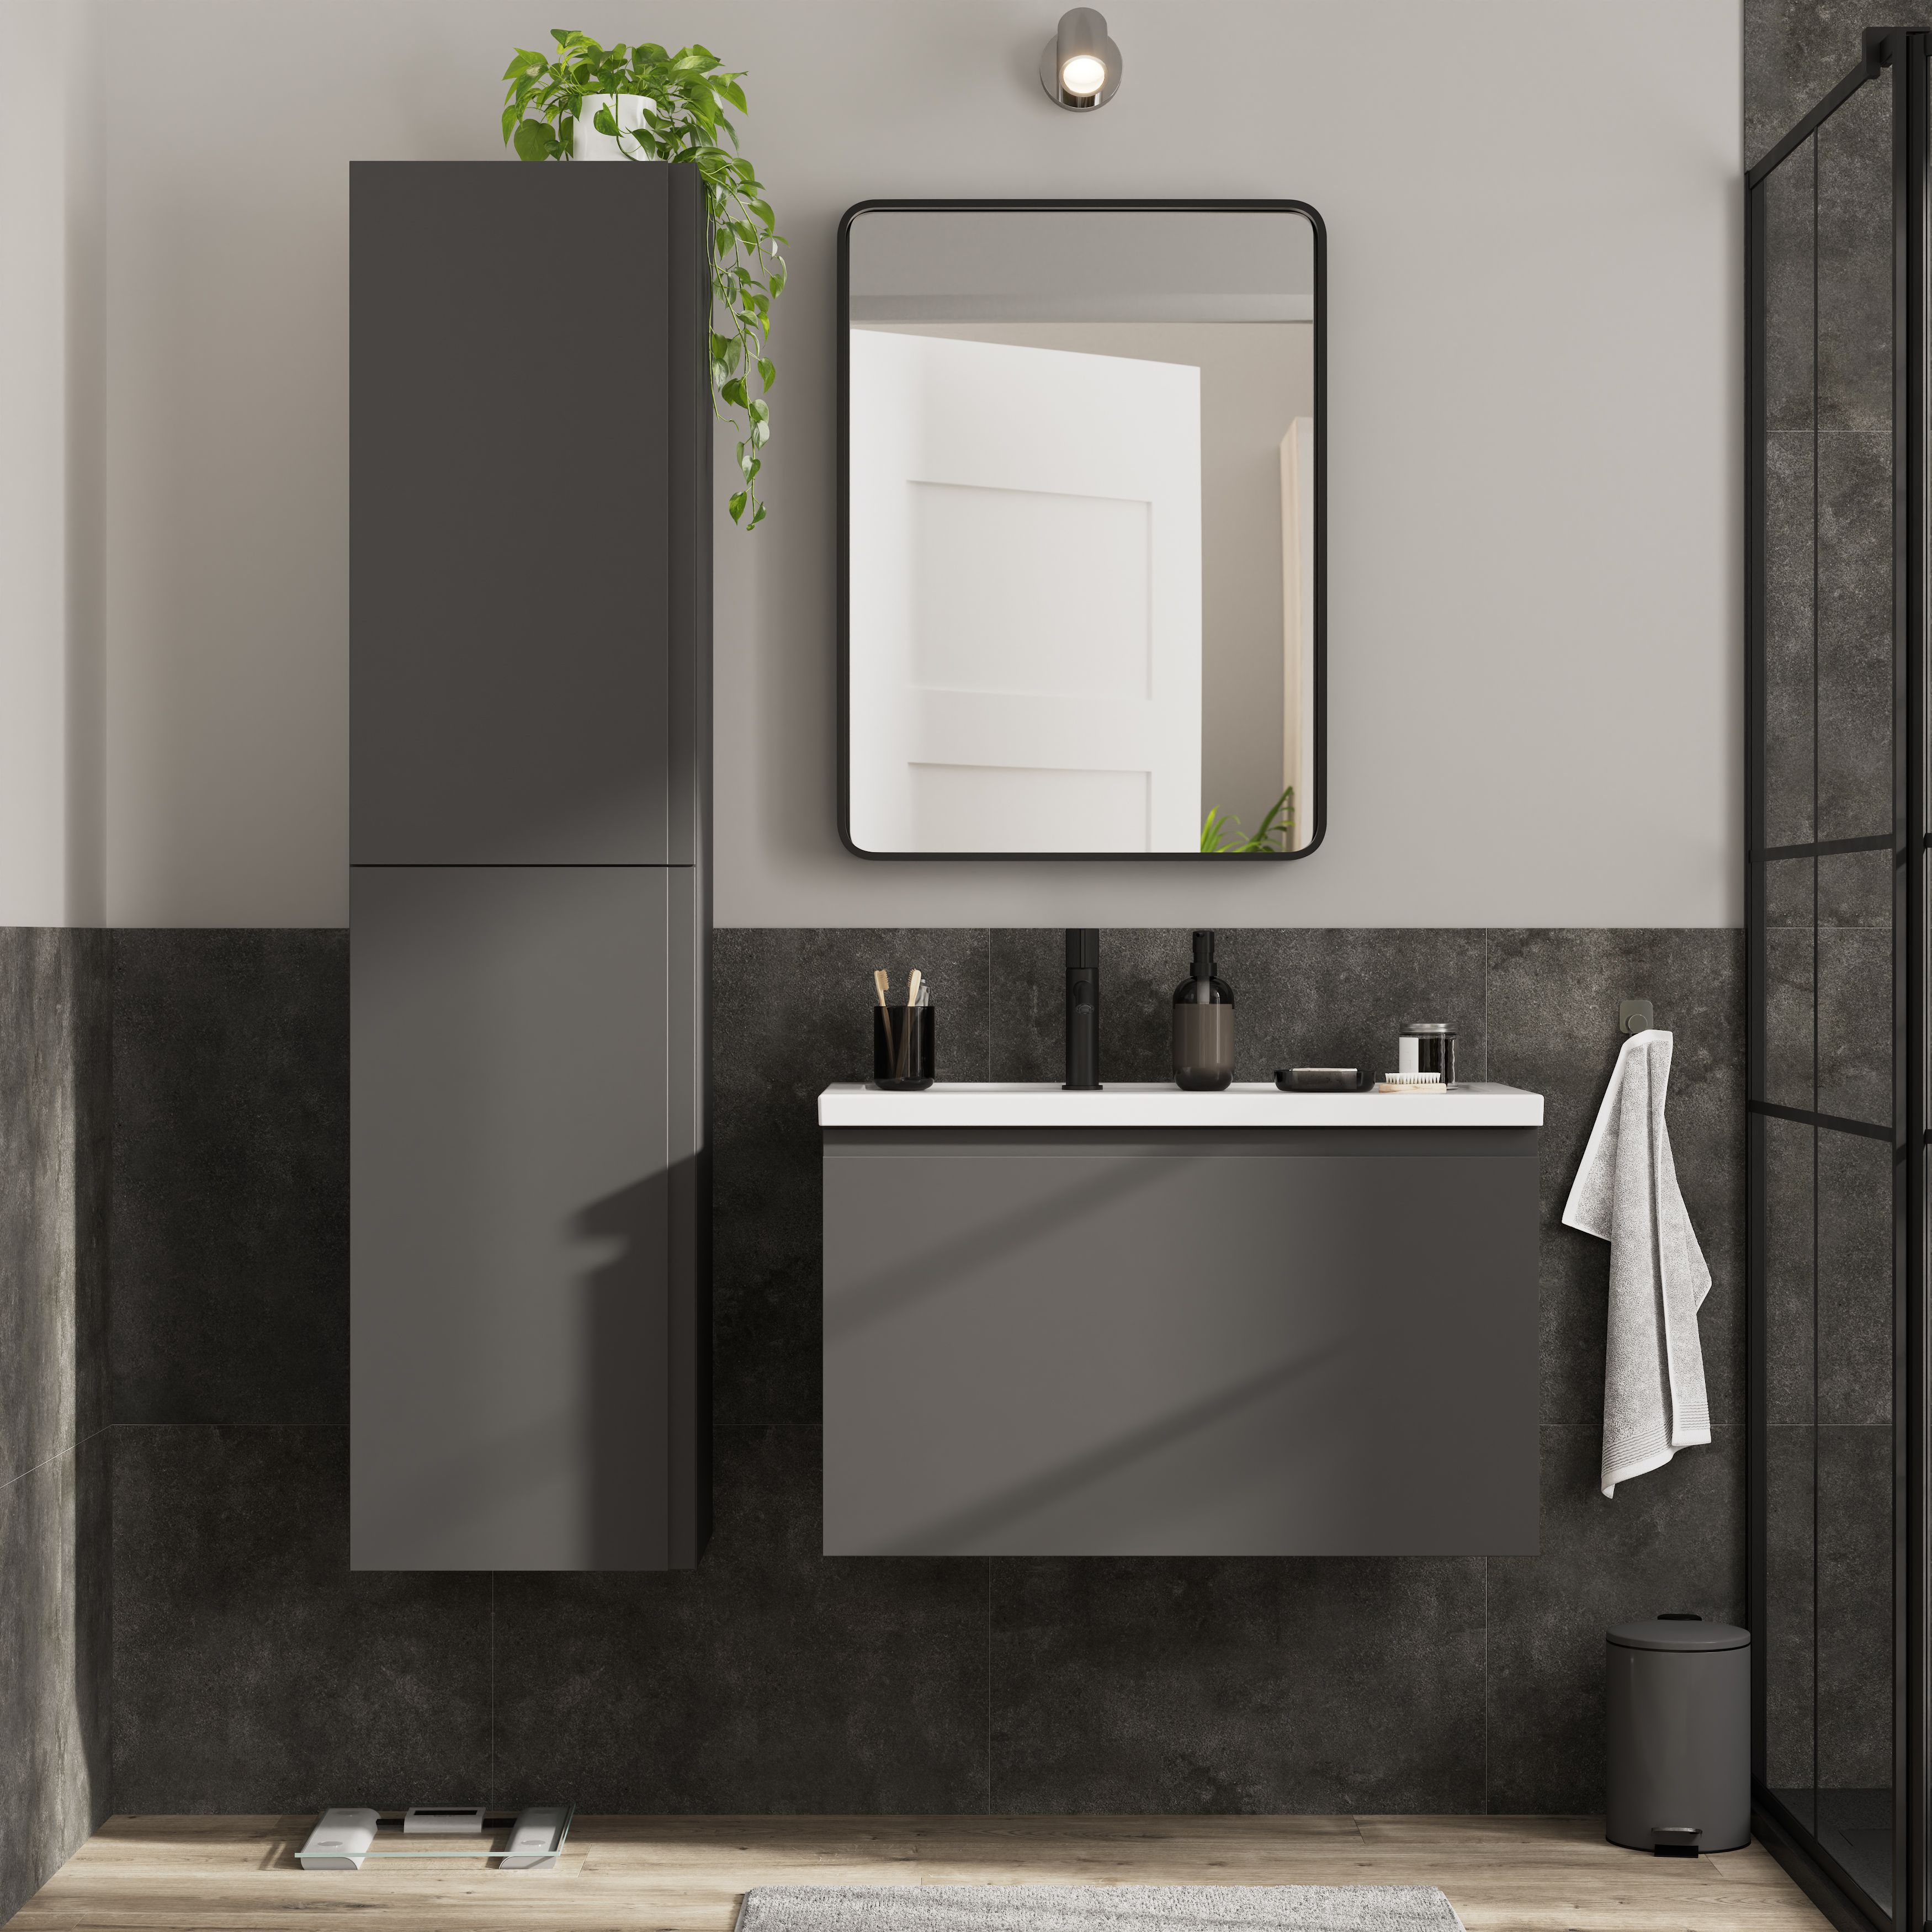 GoodHome Levanna Matt Grey Single Wall-mounted Bathroom Cabinet (H)48cm (W)80cm